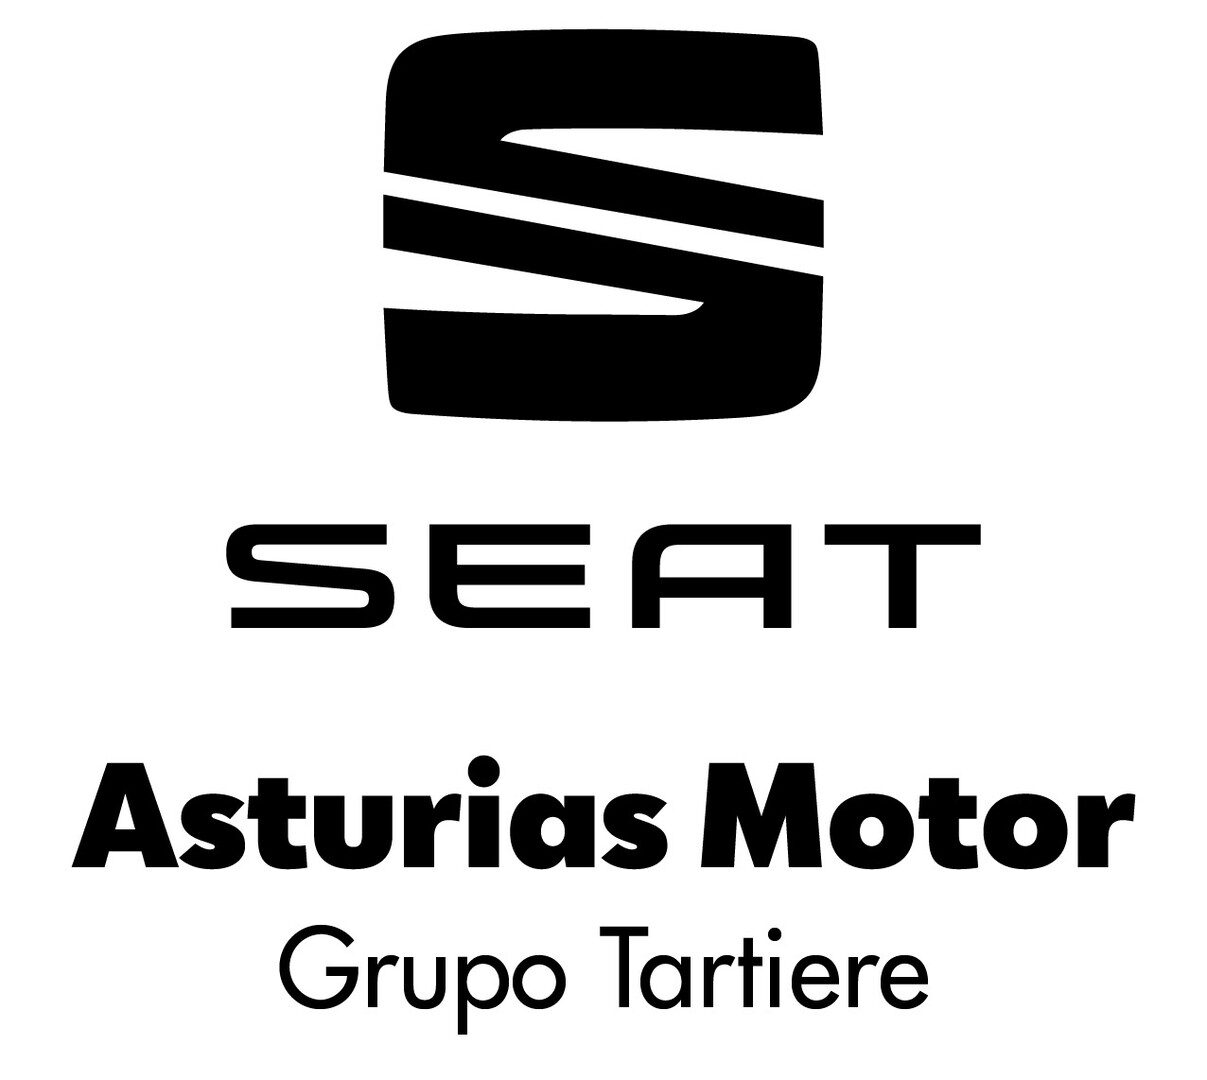 ASTURIAS MOTOR SA